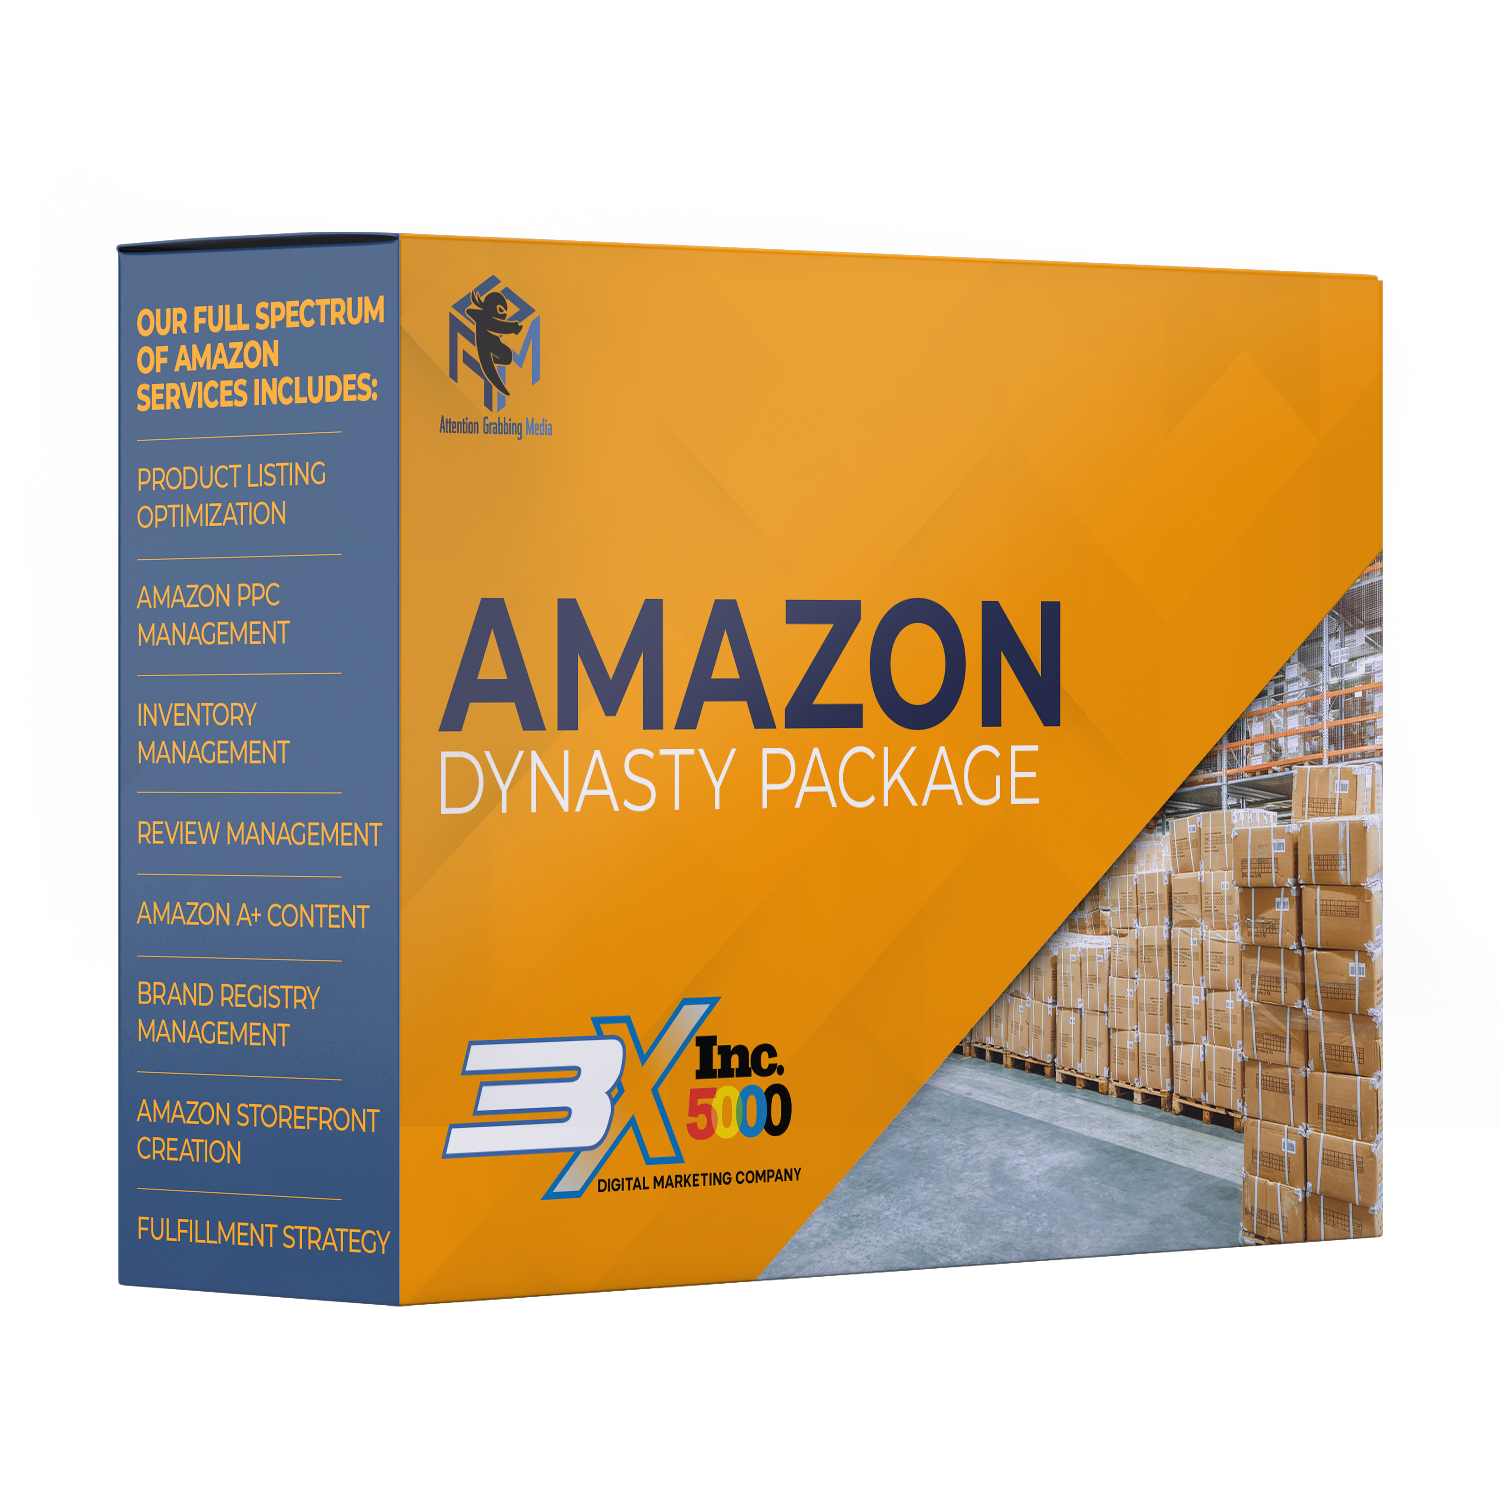 Amazon Dynasty Bundle